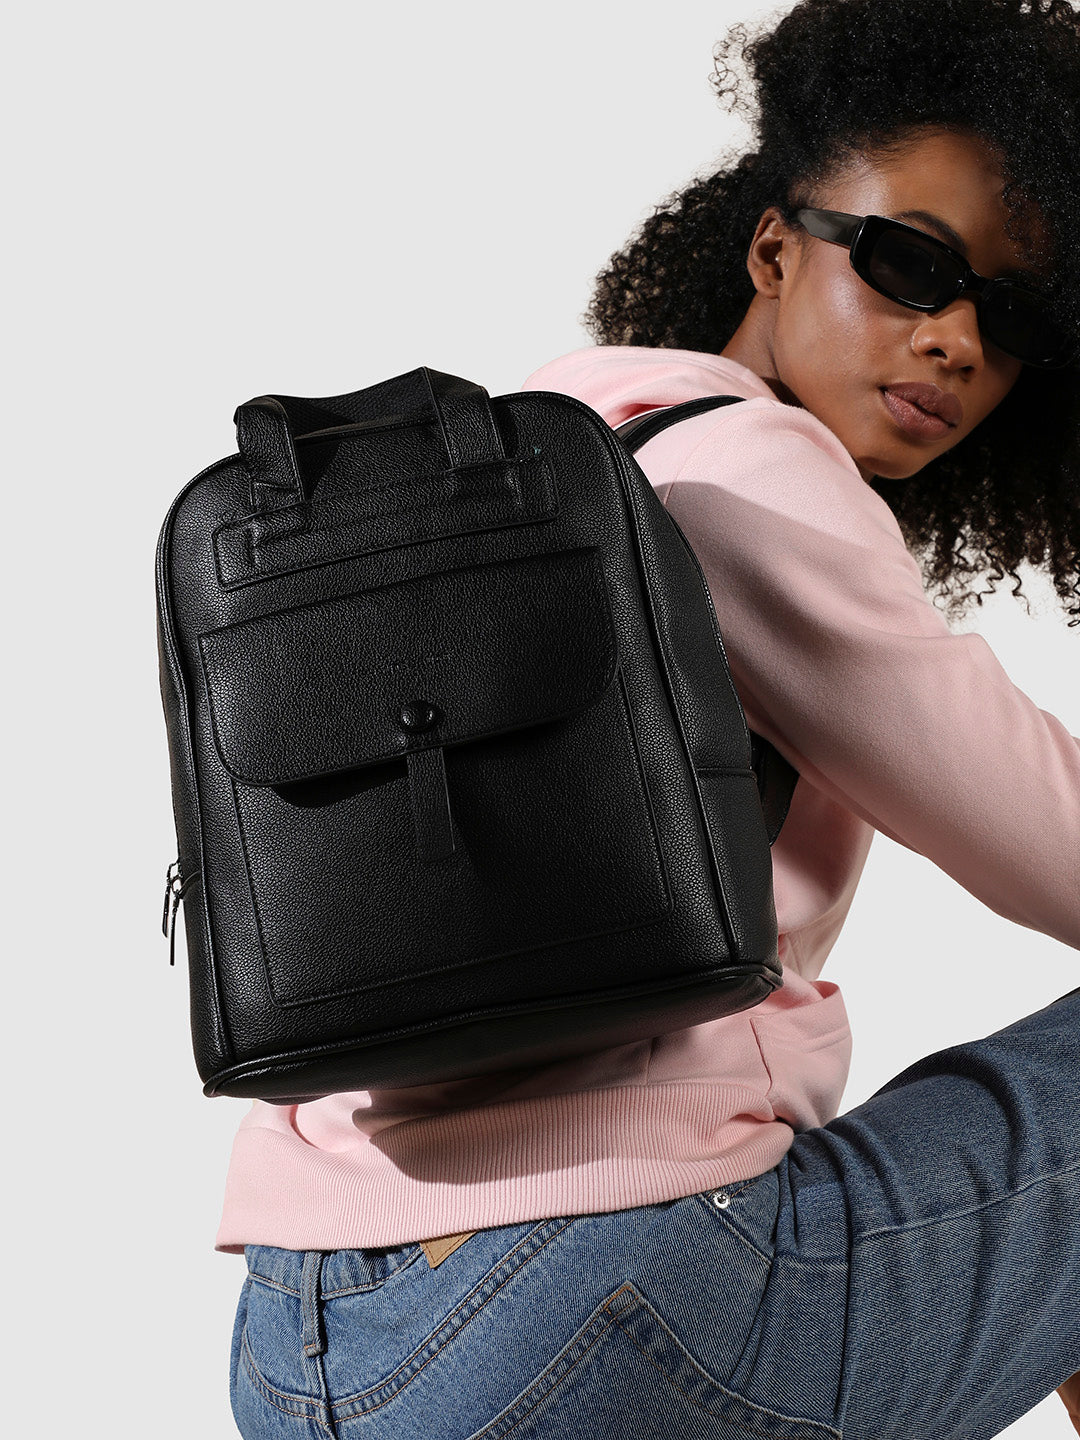 Top Handle Backpack - Black